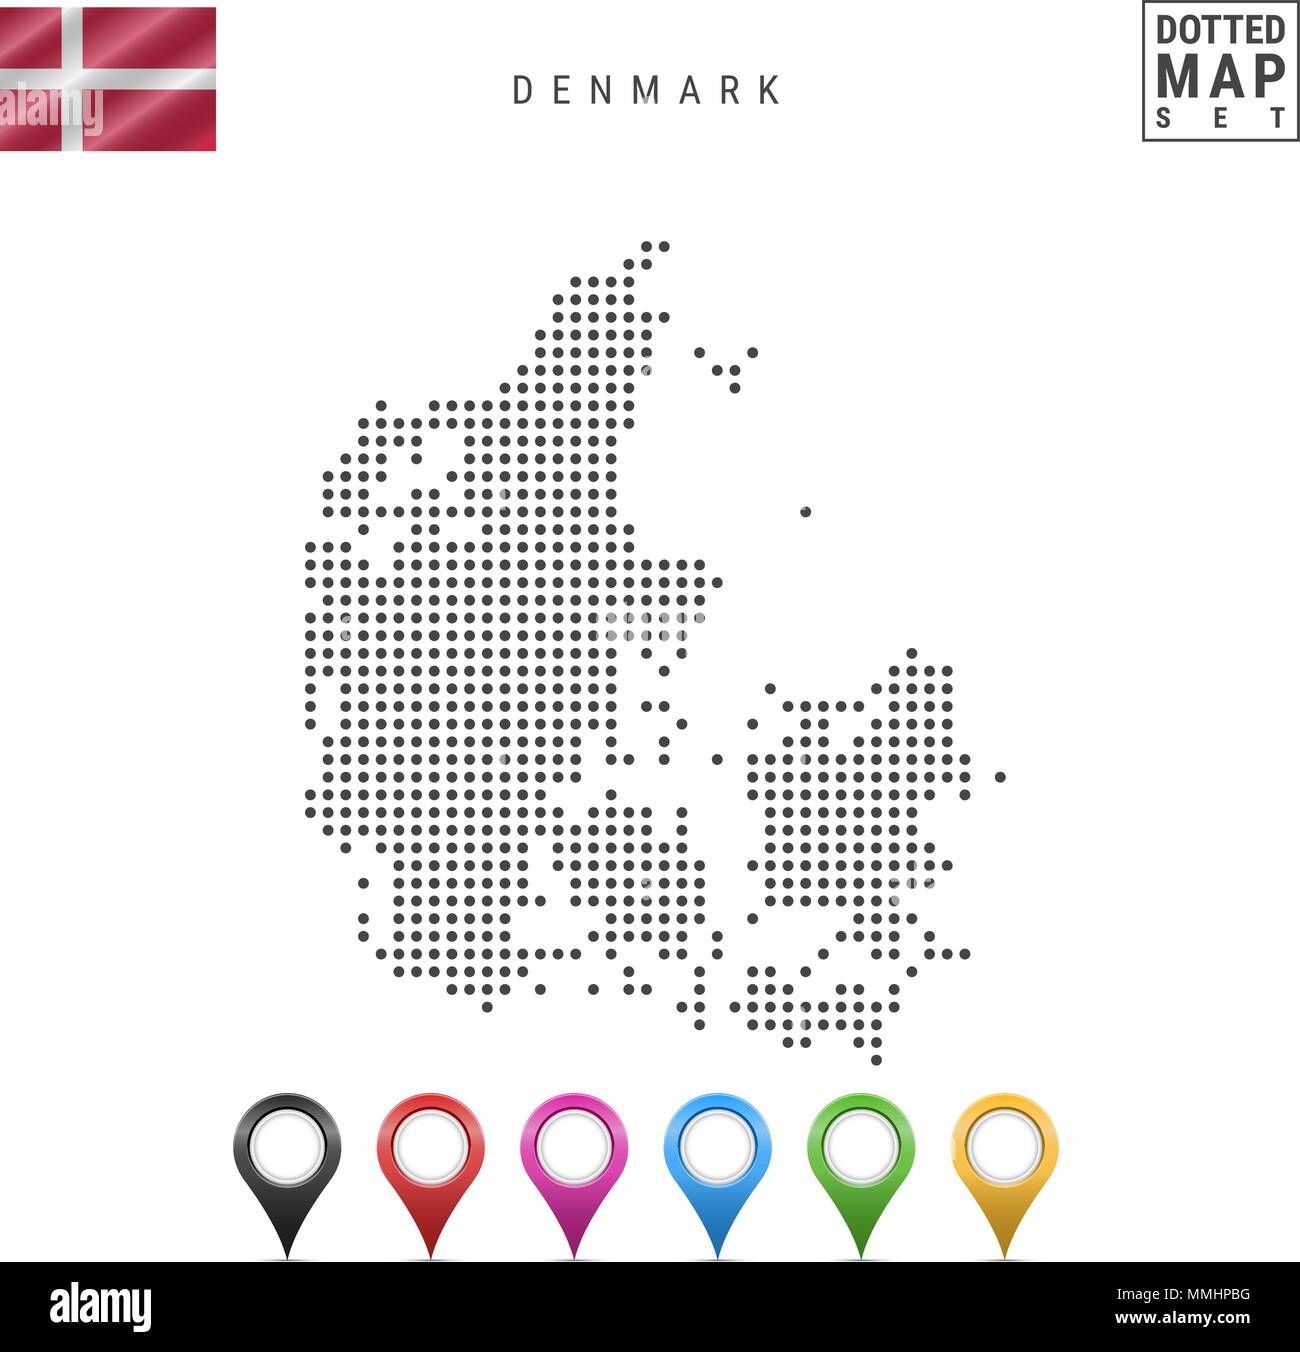 Vettore Mappa punteggiata di Danimarca. Semplice Silhouette della Danimarca. Bandiera Nazionale della Danimarca. Insieme multicolore i marcatori mappa Illustrazione Vettoriale